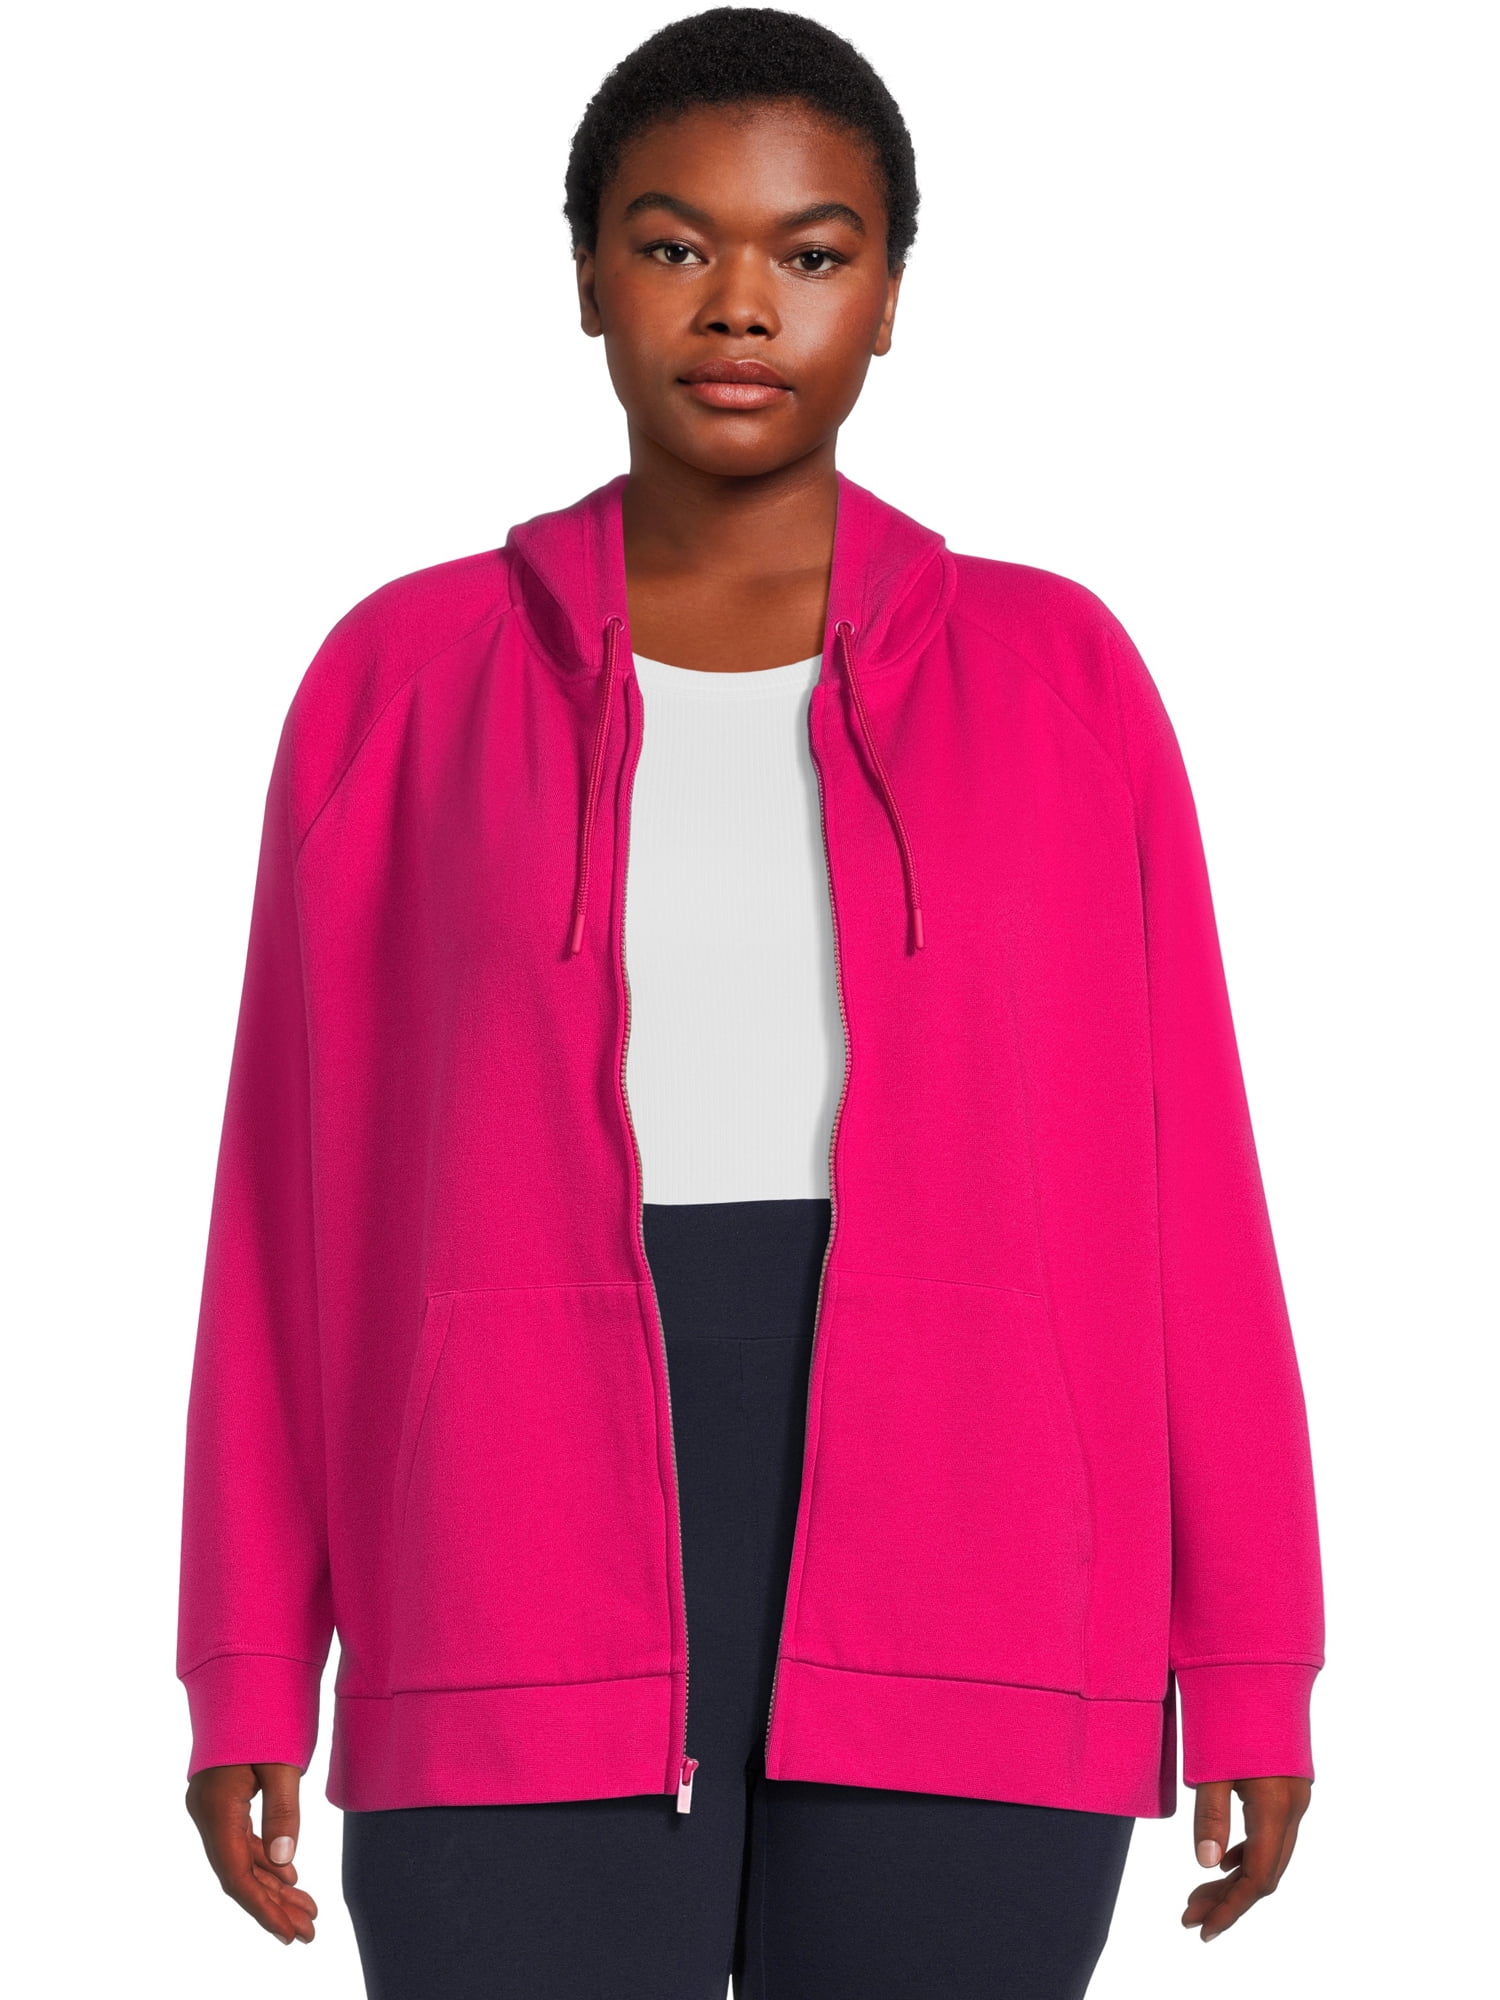 Terra & Sky Women's Plus Size Full Zip Fleece Hoodie - Walmart.com